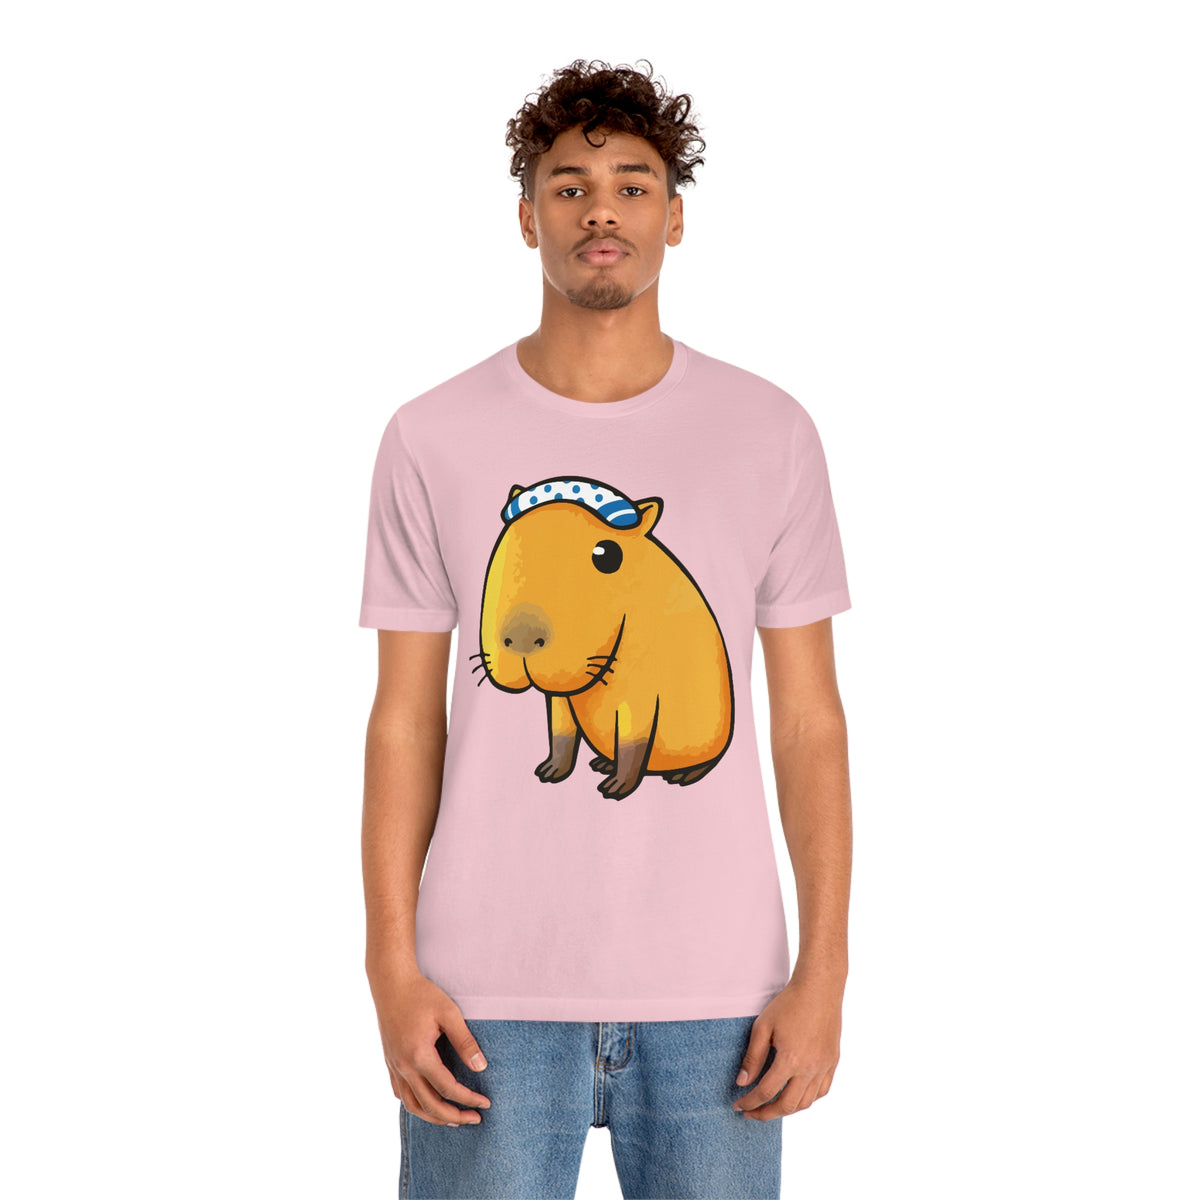 Capybara - Premium Unisex Tee